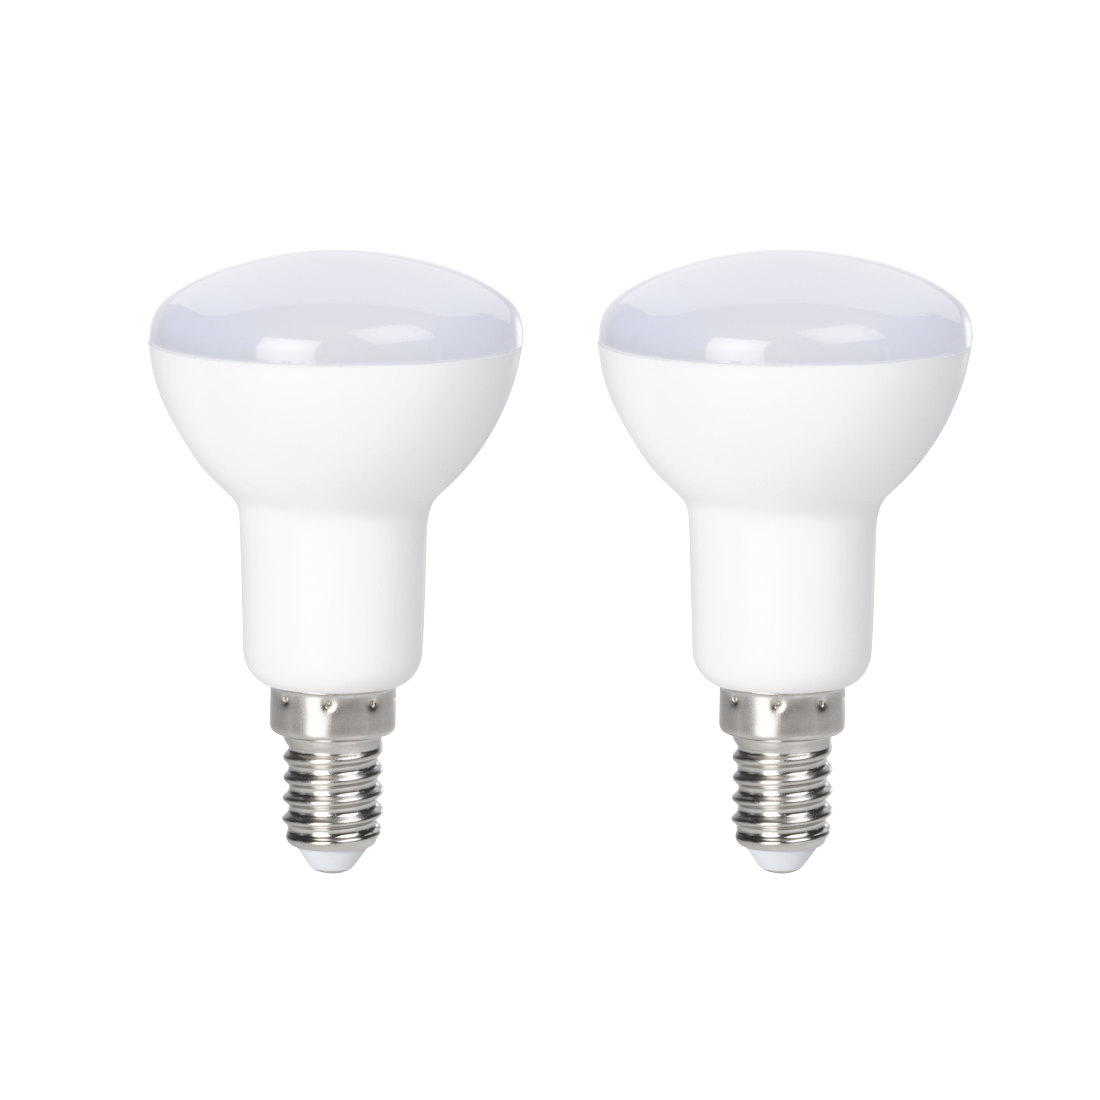 abx Druckfähige Abbildung - Xavax, LED-Lampe, E14, 450lm ersetzt 39W, Reflektorlampe R50, Warmweiß, 2 Stück